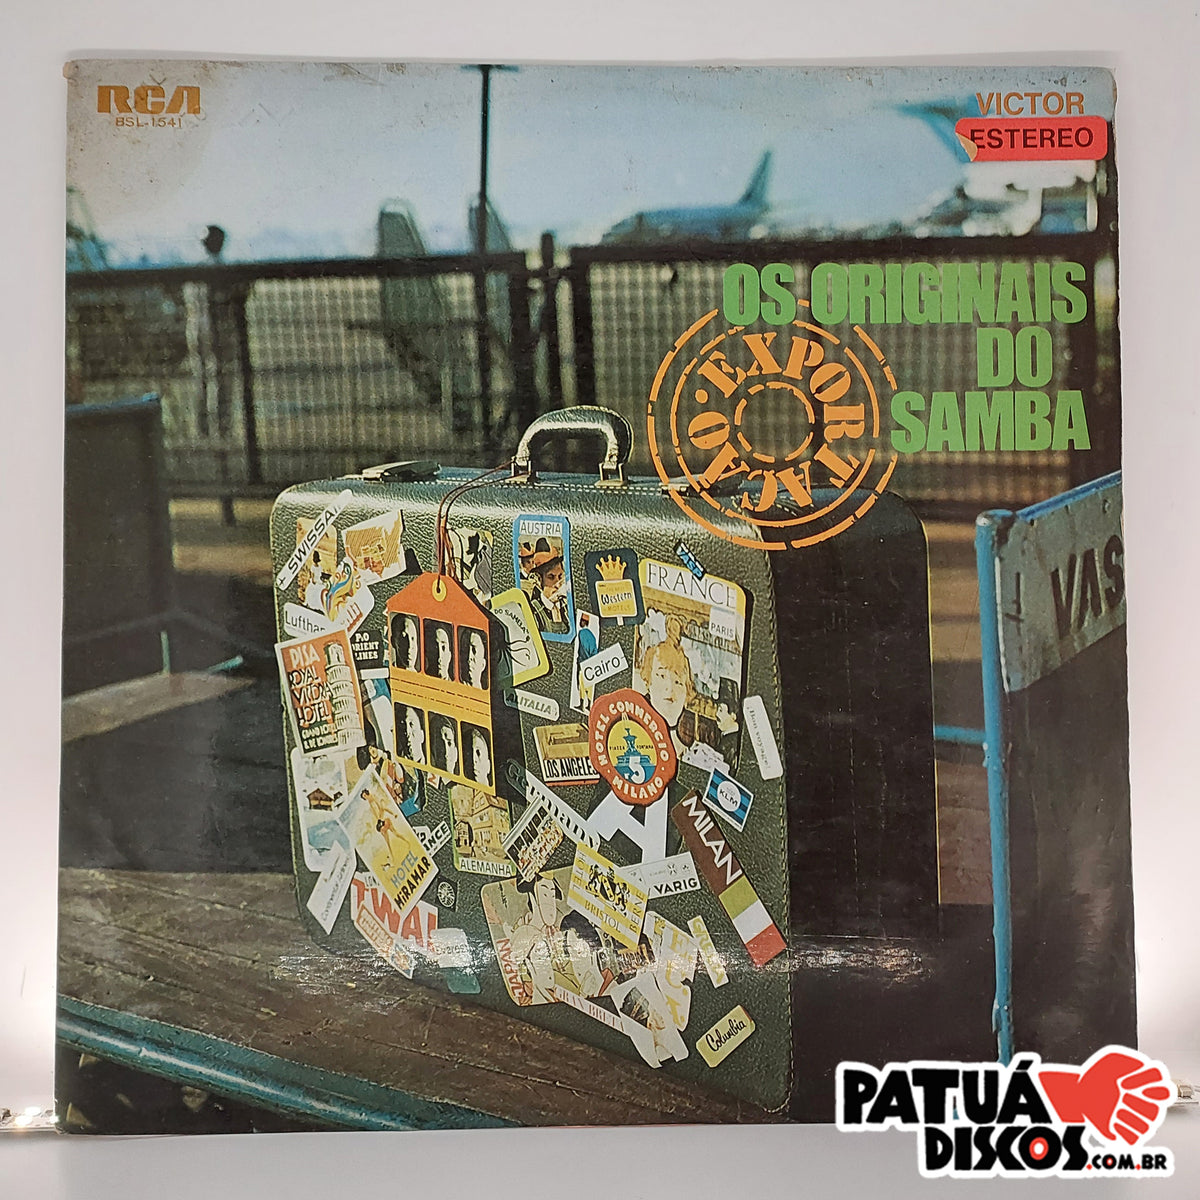 Os Originais Do Samba: albums, songs, playlists